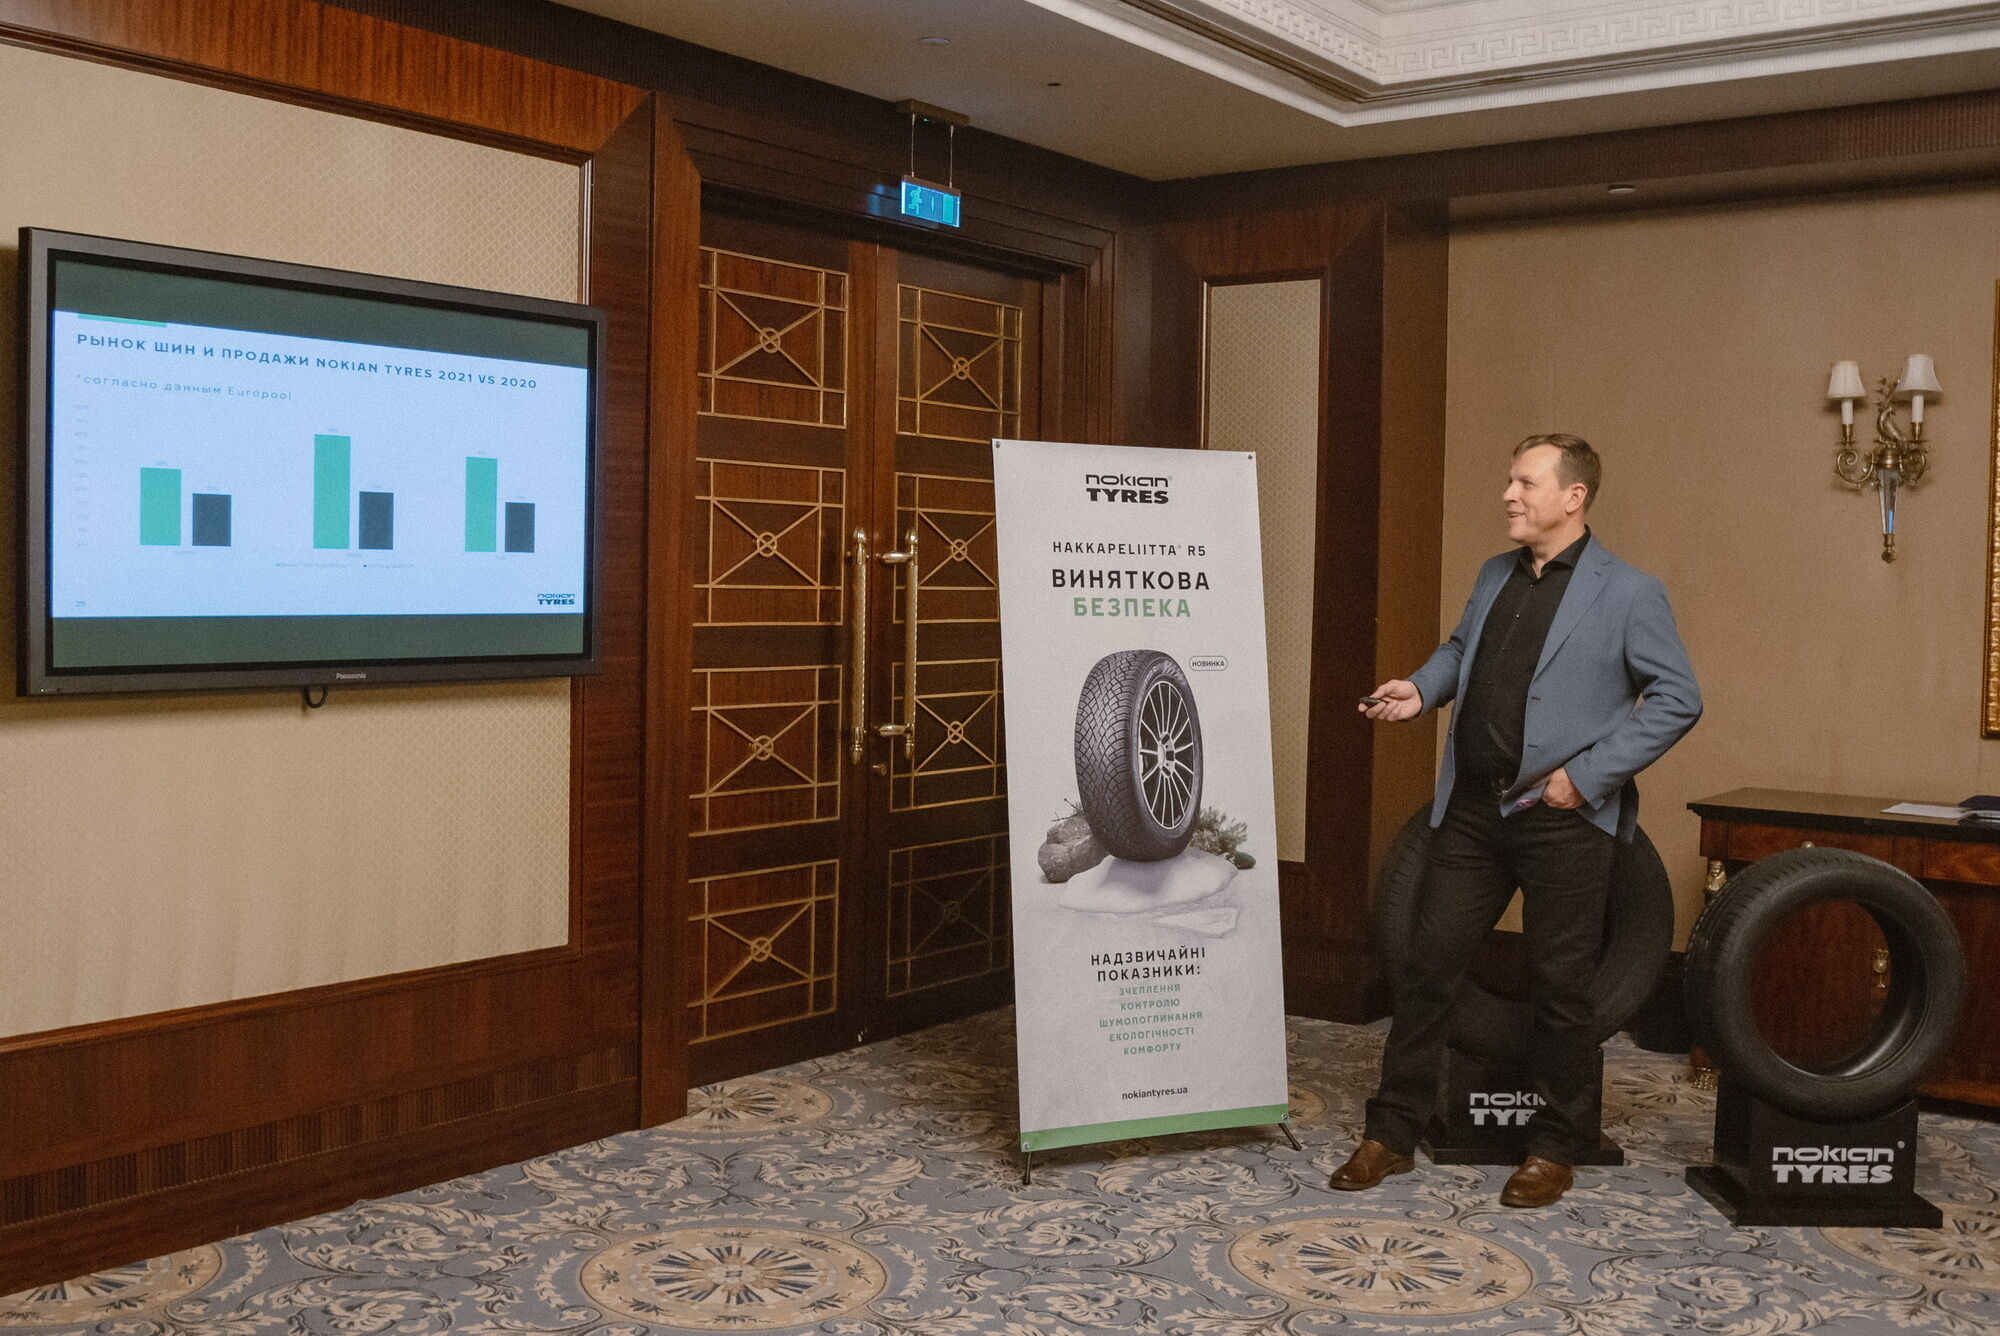 Директор представництва Nokian Tyres в Україні Костянтин Анісімов повідомив, що продаж Nokian Tyres в Україні зріс на 41% порівняно з 2020 роком